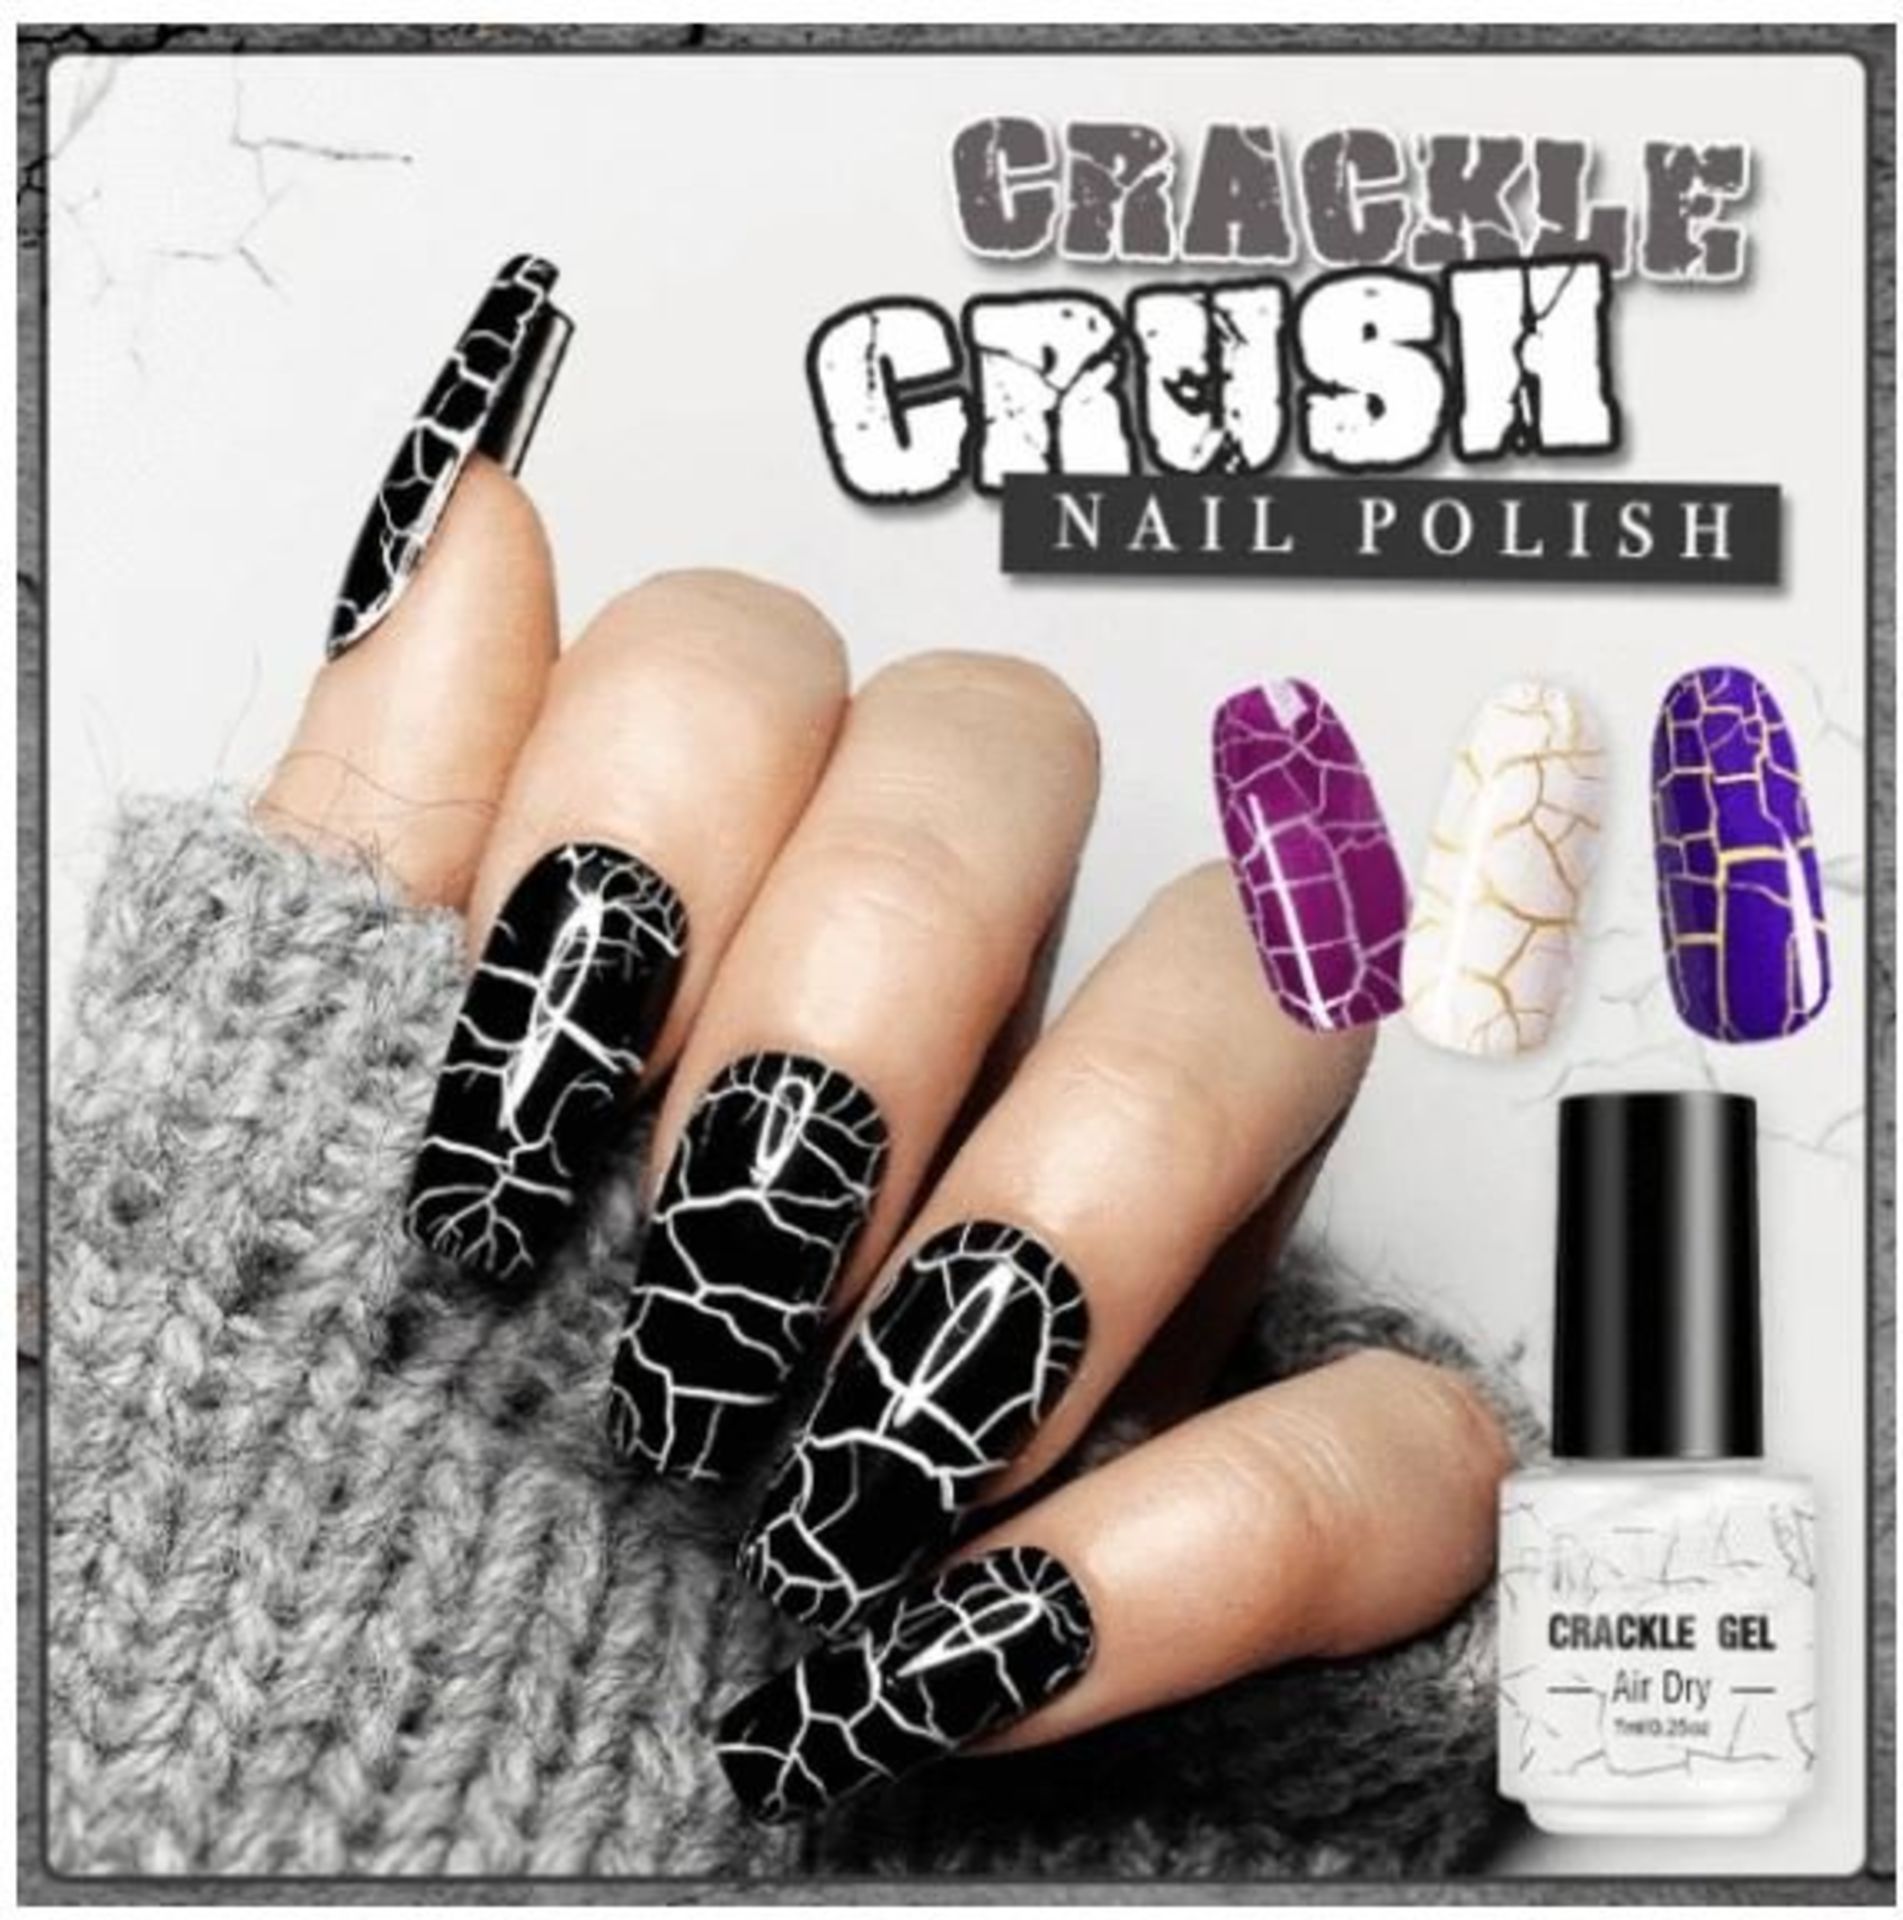 x16 Rio Crackle Nail Polish Kits - Image 2 of 2